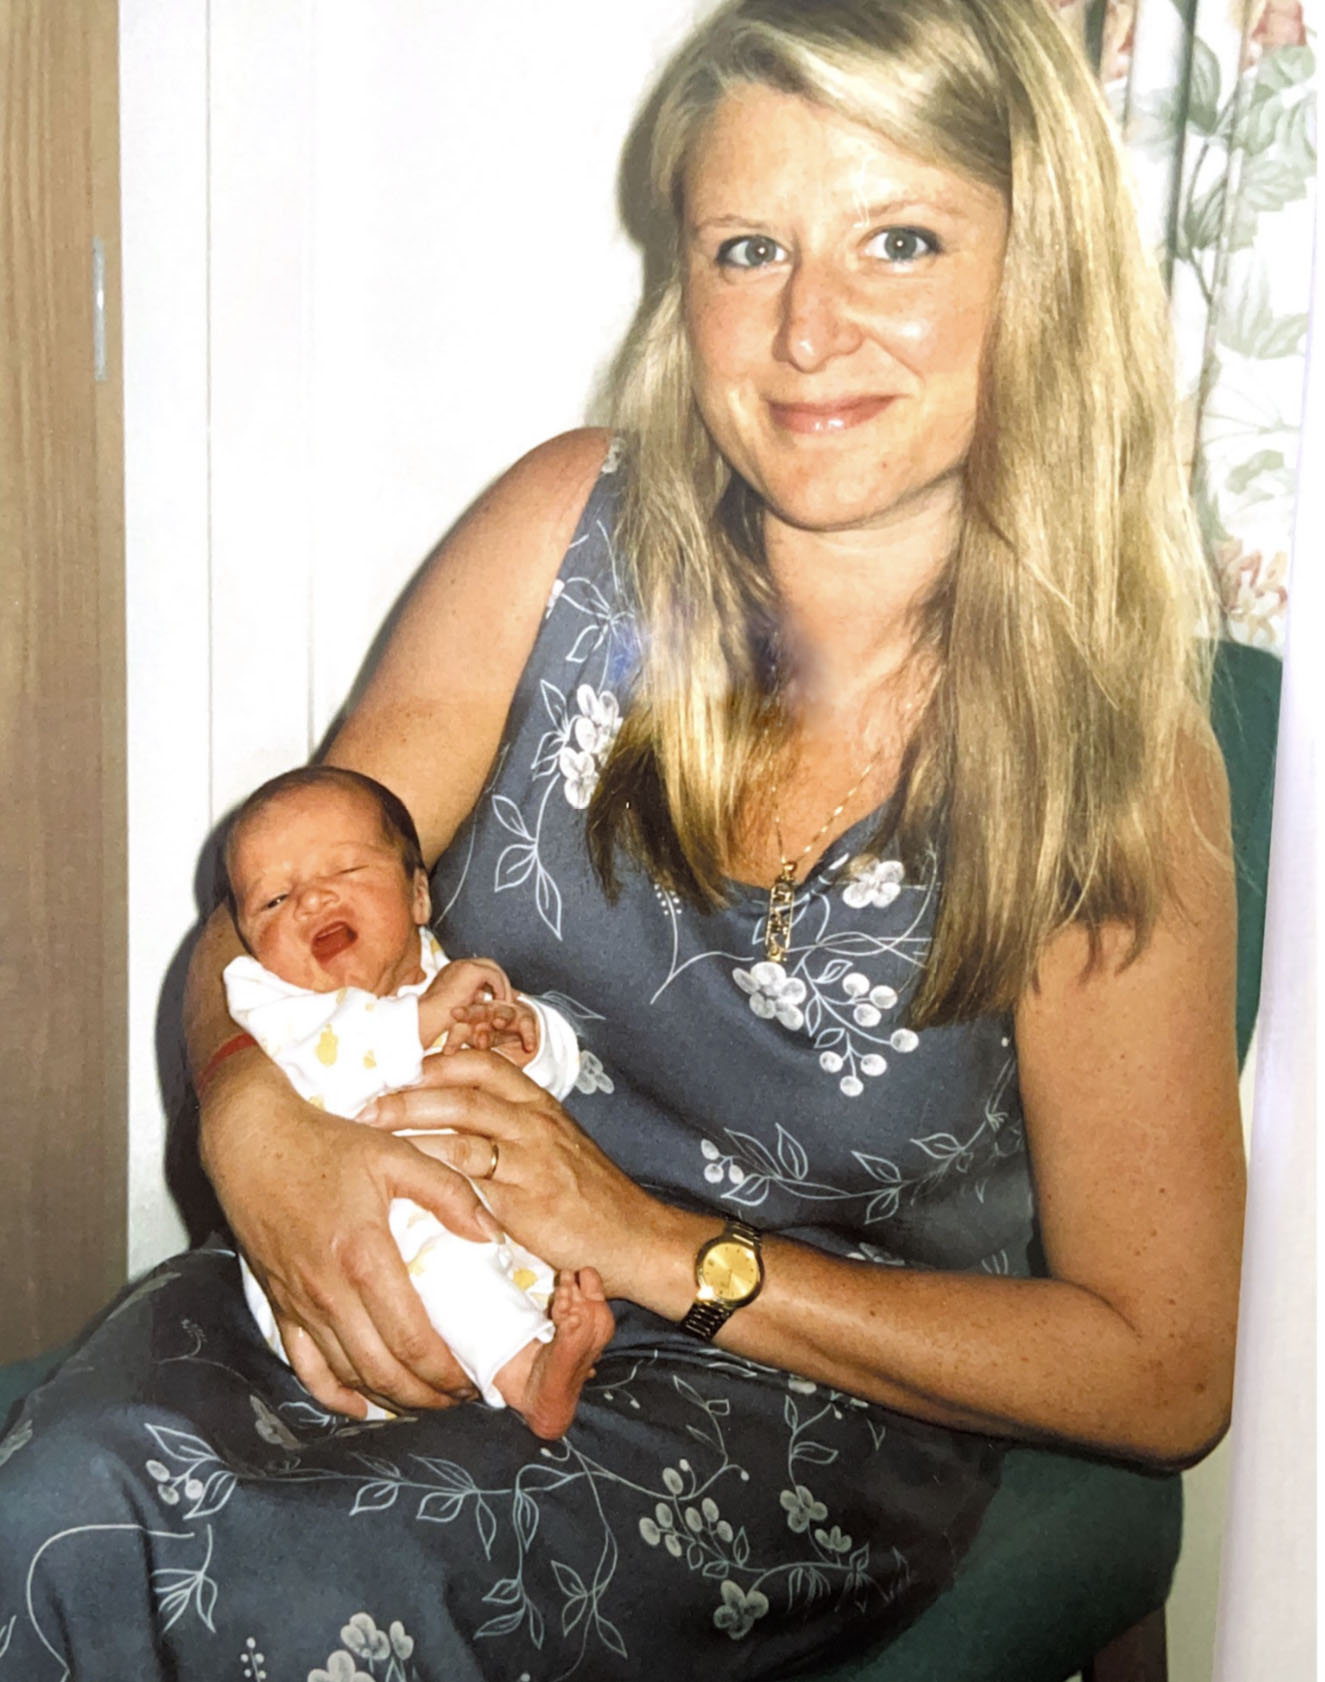 Brown schlug Joanna Simpson in Hörweite ihrer beiden kleinen Kinder zu Tode